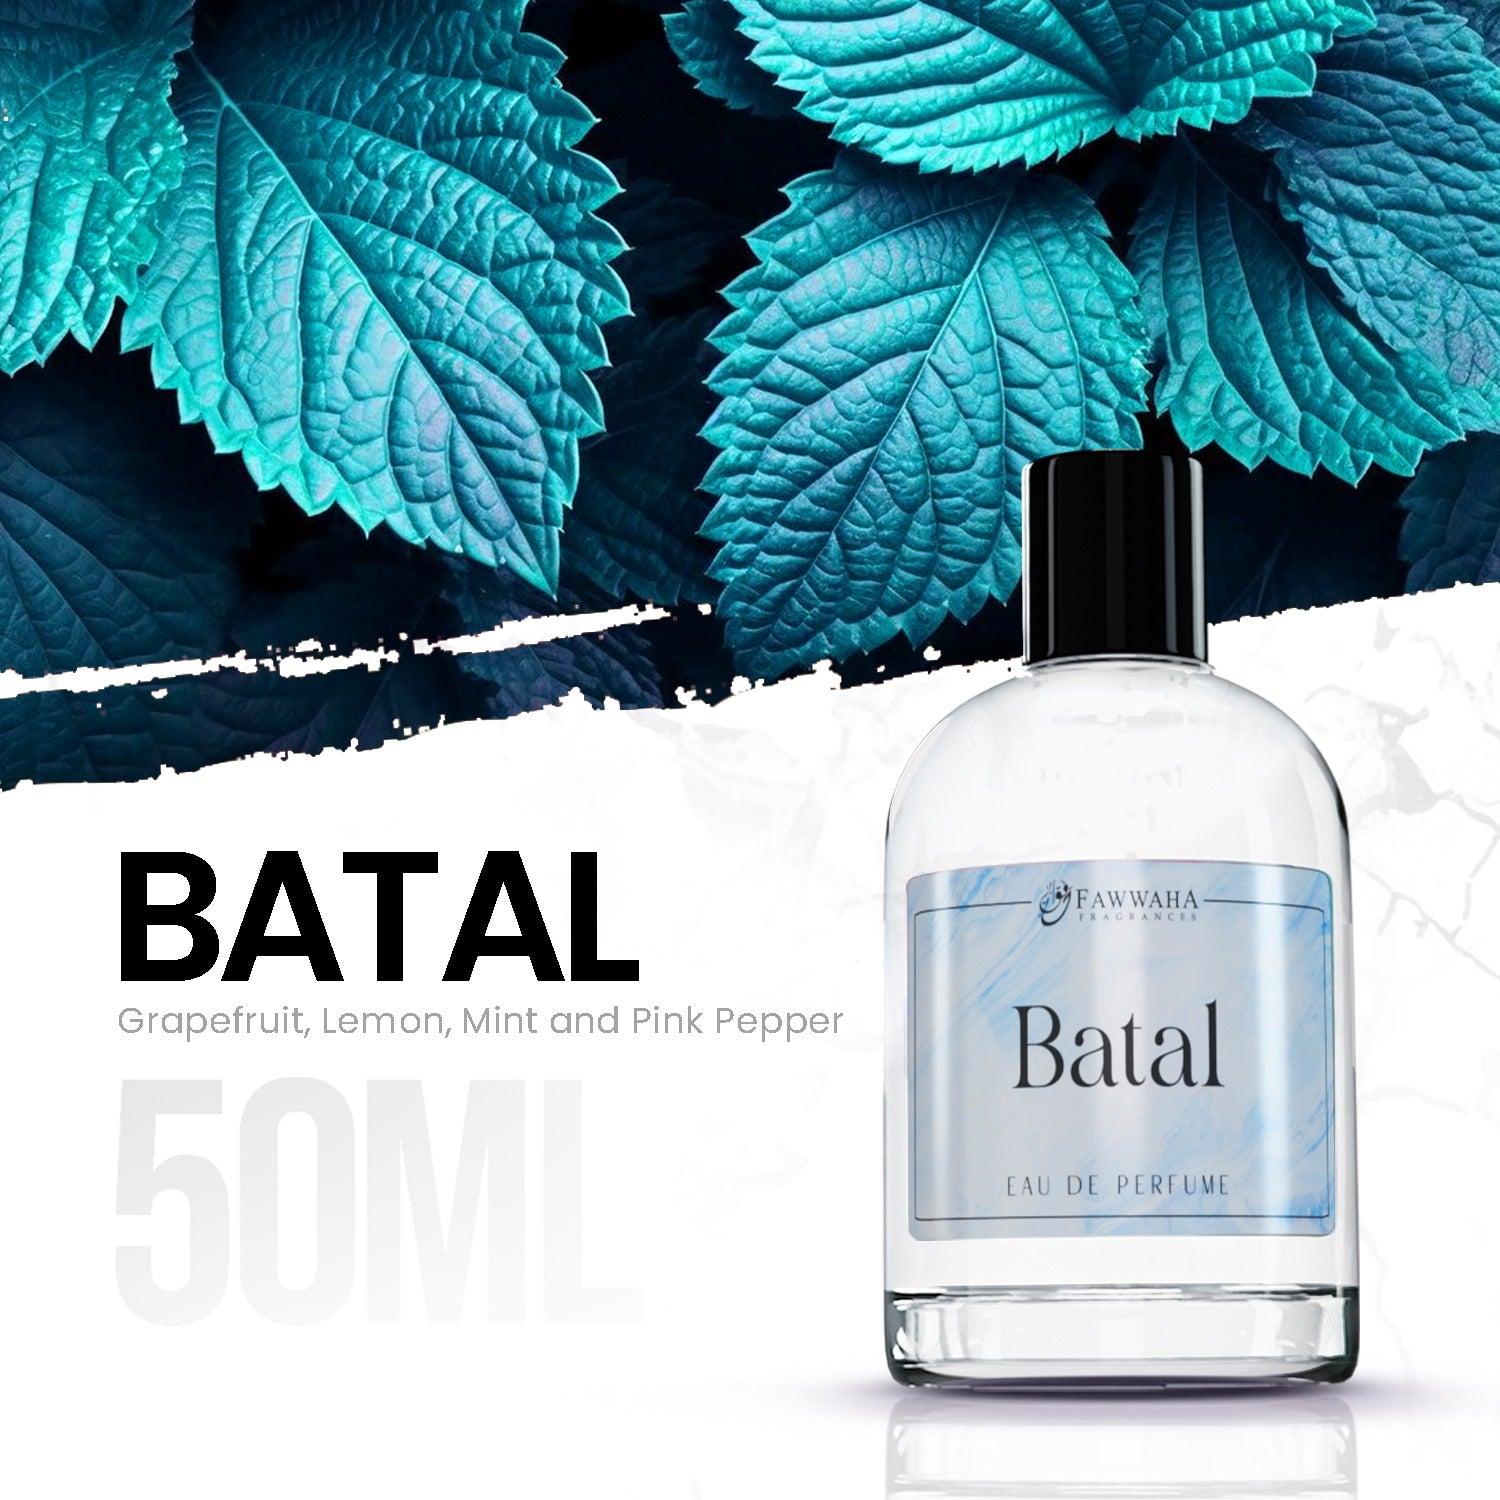 BATAL (OUR IMPRESSION OF BLEU DE CHANEL)